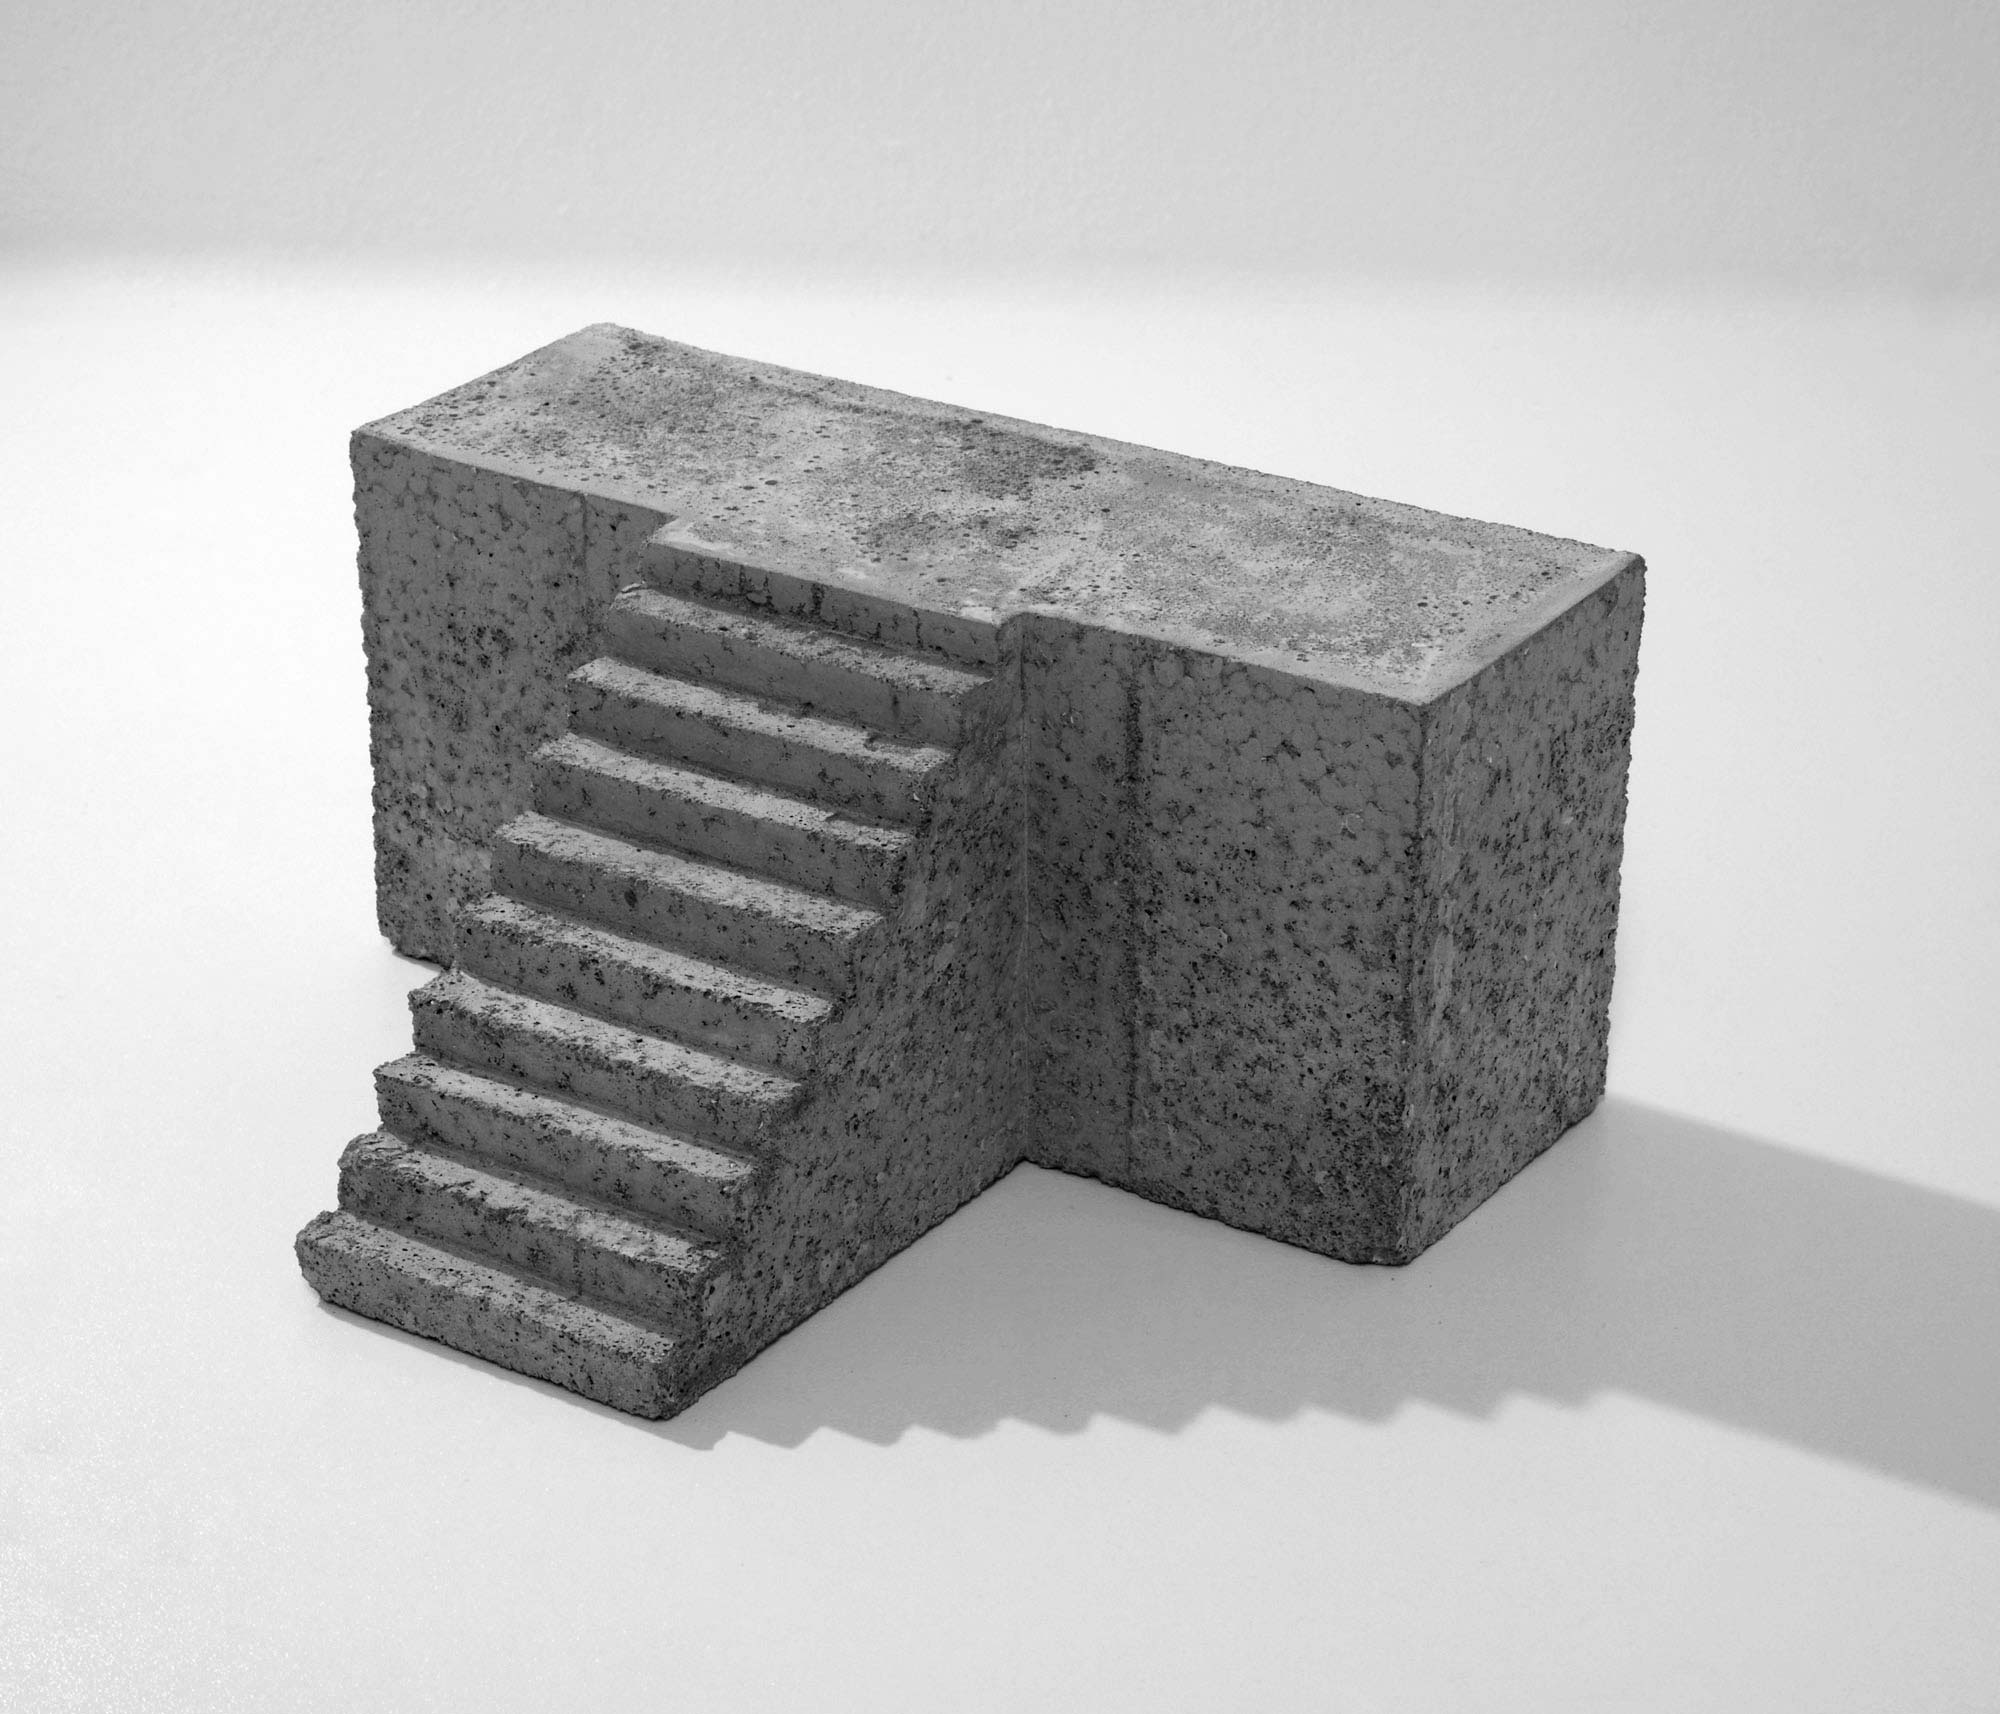 mattia listowski art design objet décoration sculpture béton moulage micro architecture maquette escalier estrade édition limitée numérotée signée paris bruxelles 2020